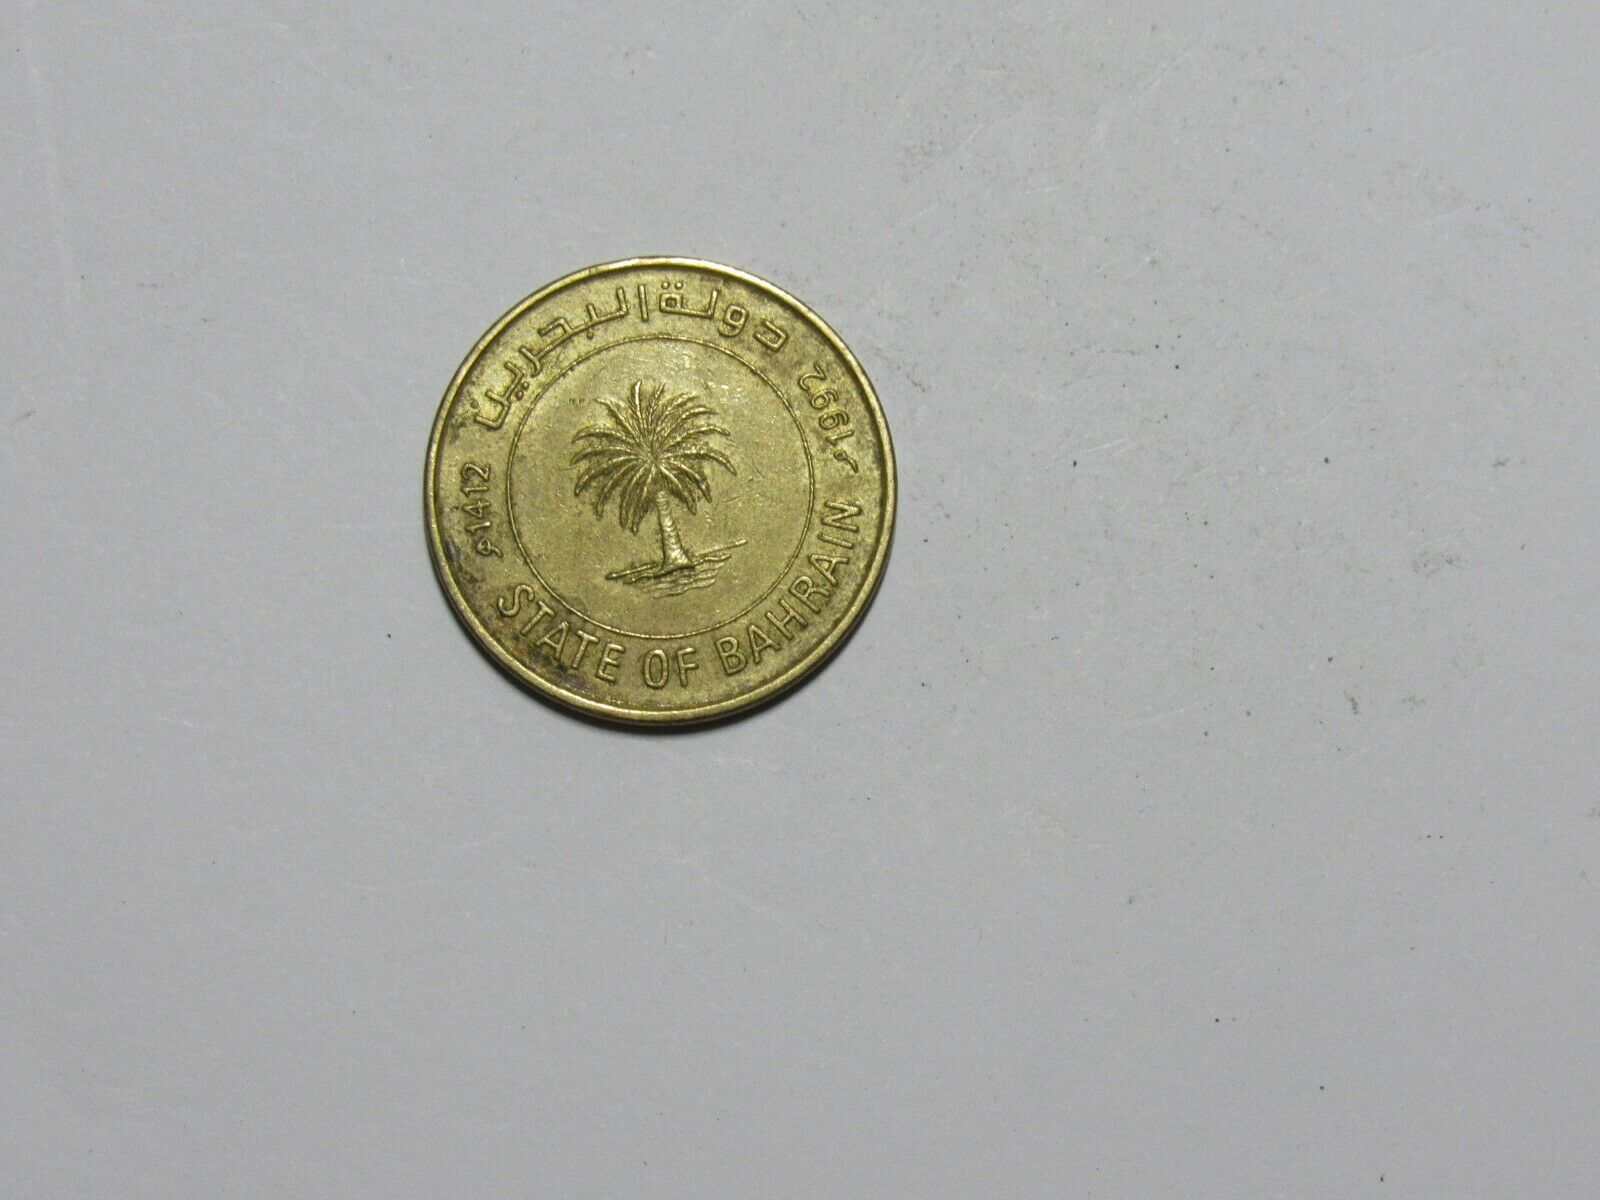 Bahrain Coin - 1992 10 Fils - Circulated